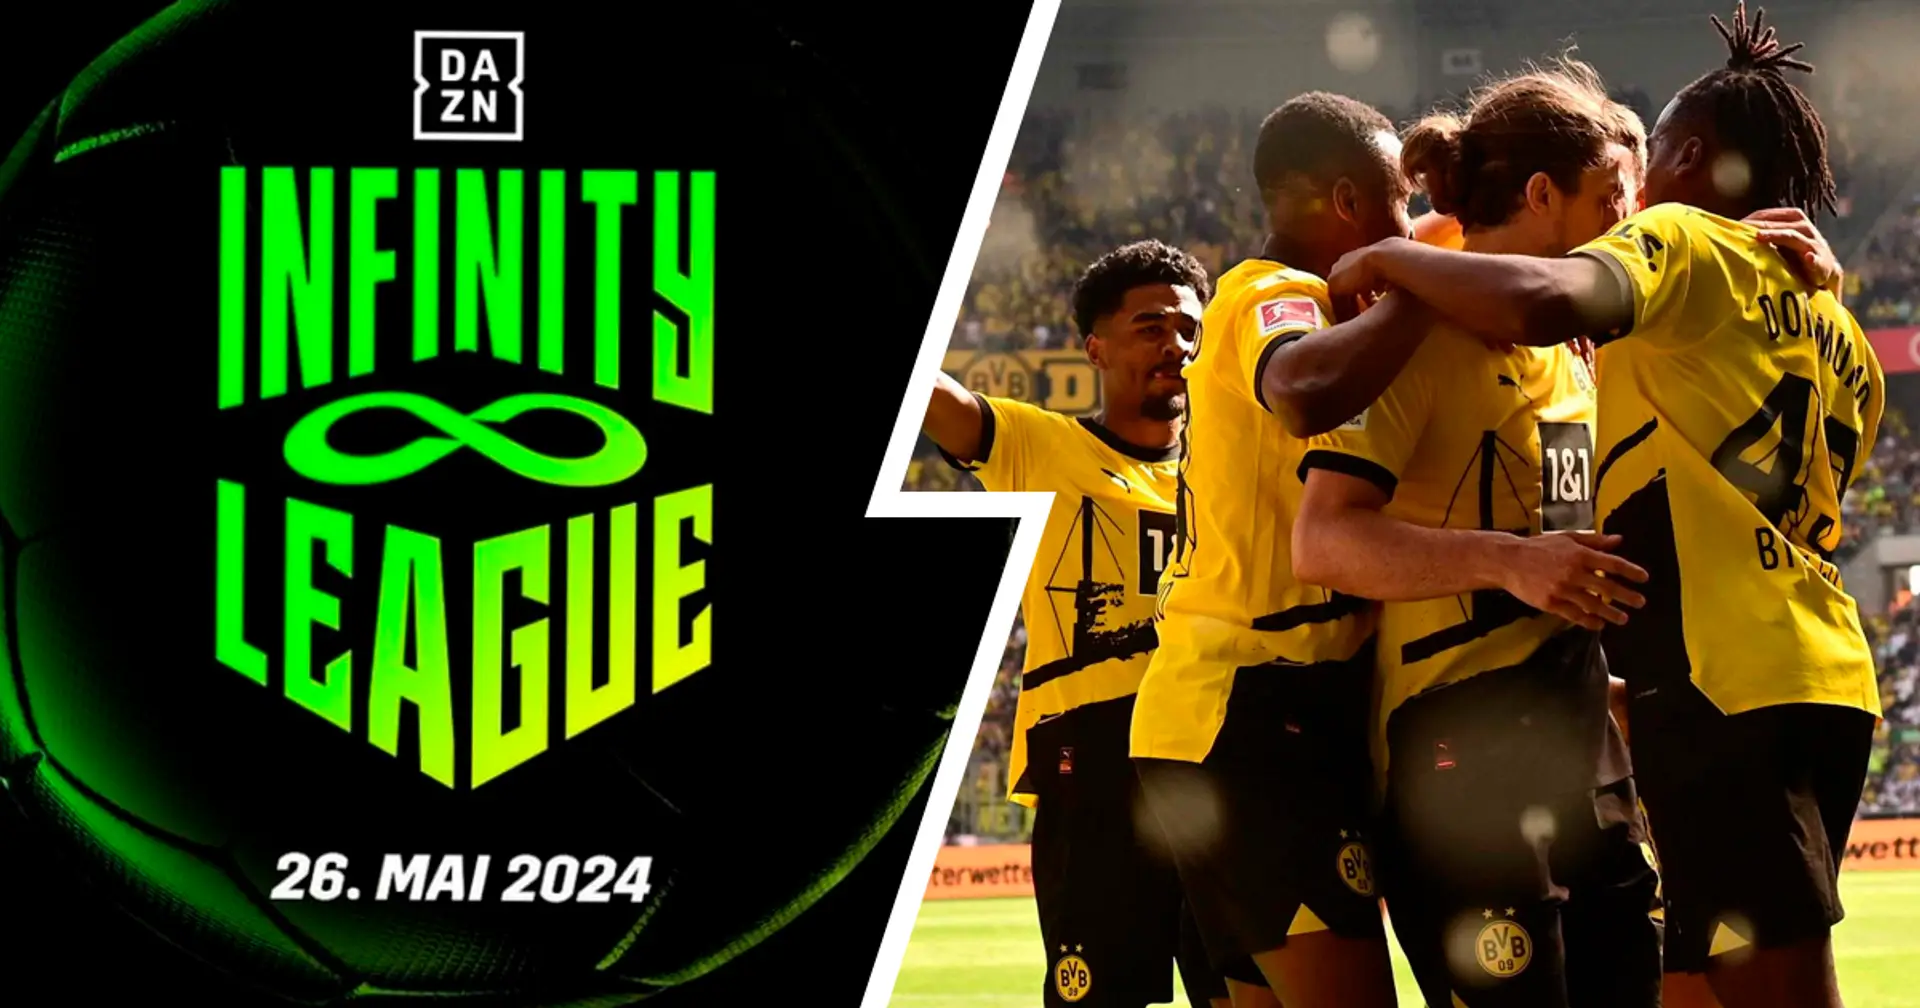 BVB mit dabei: DAZN kündigt "Infinity League" an - Format des neuen Turniers erklärt